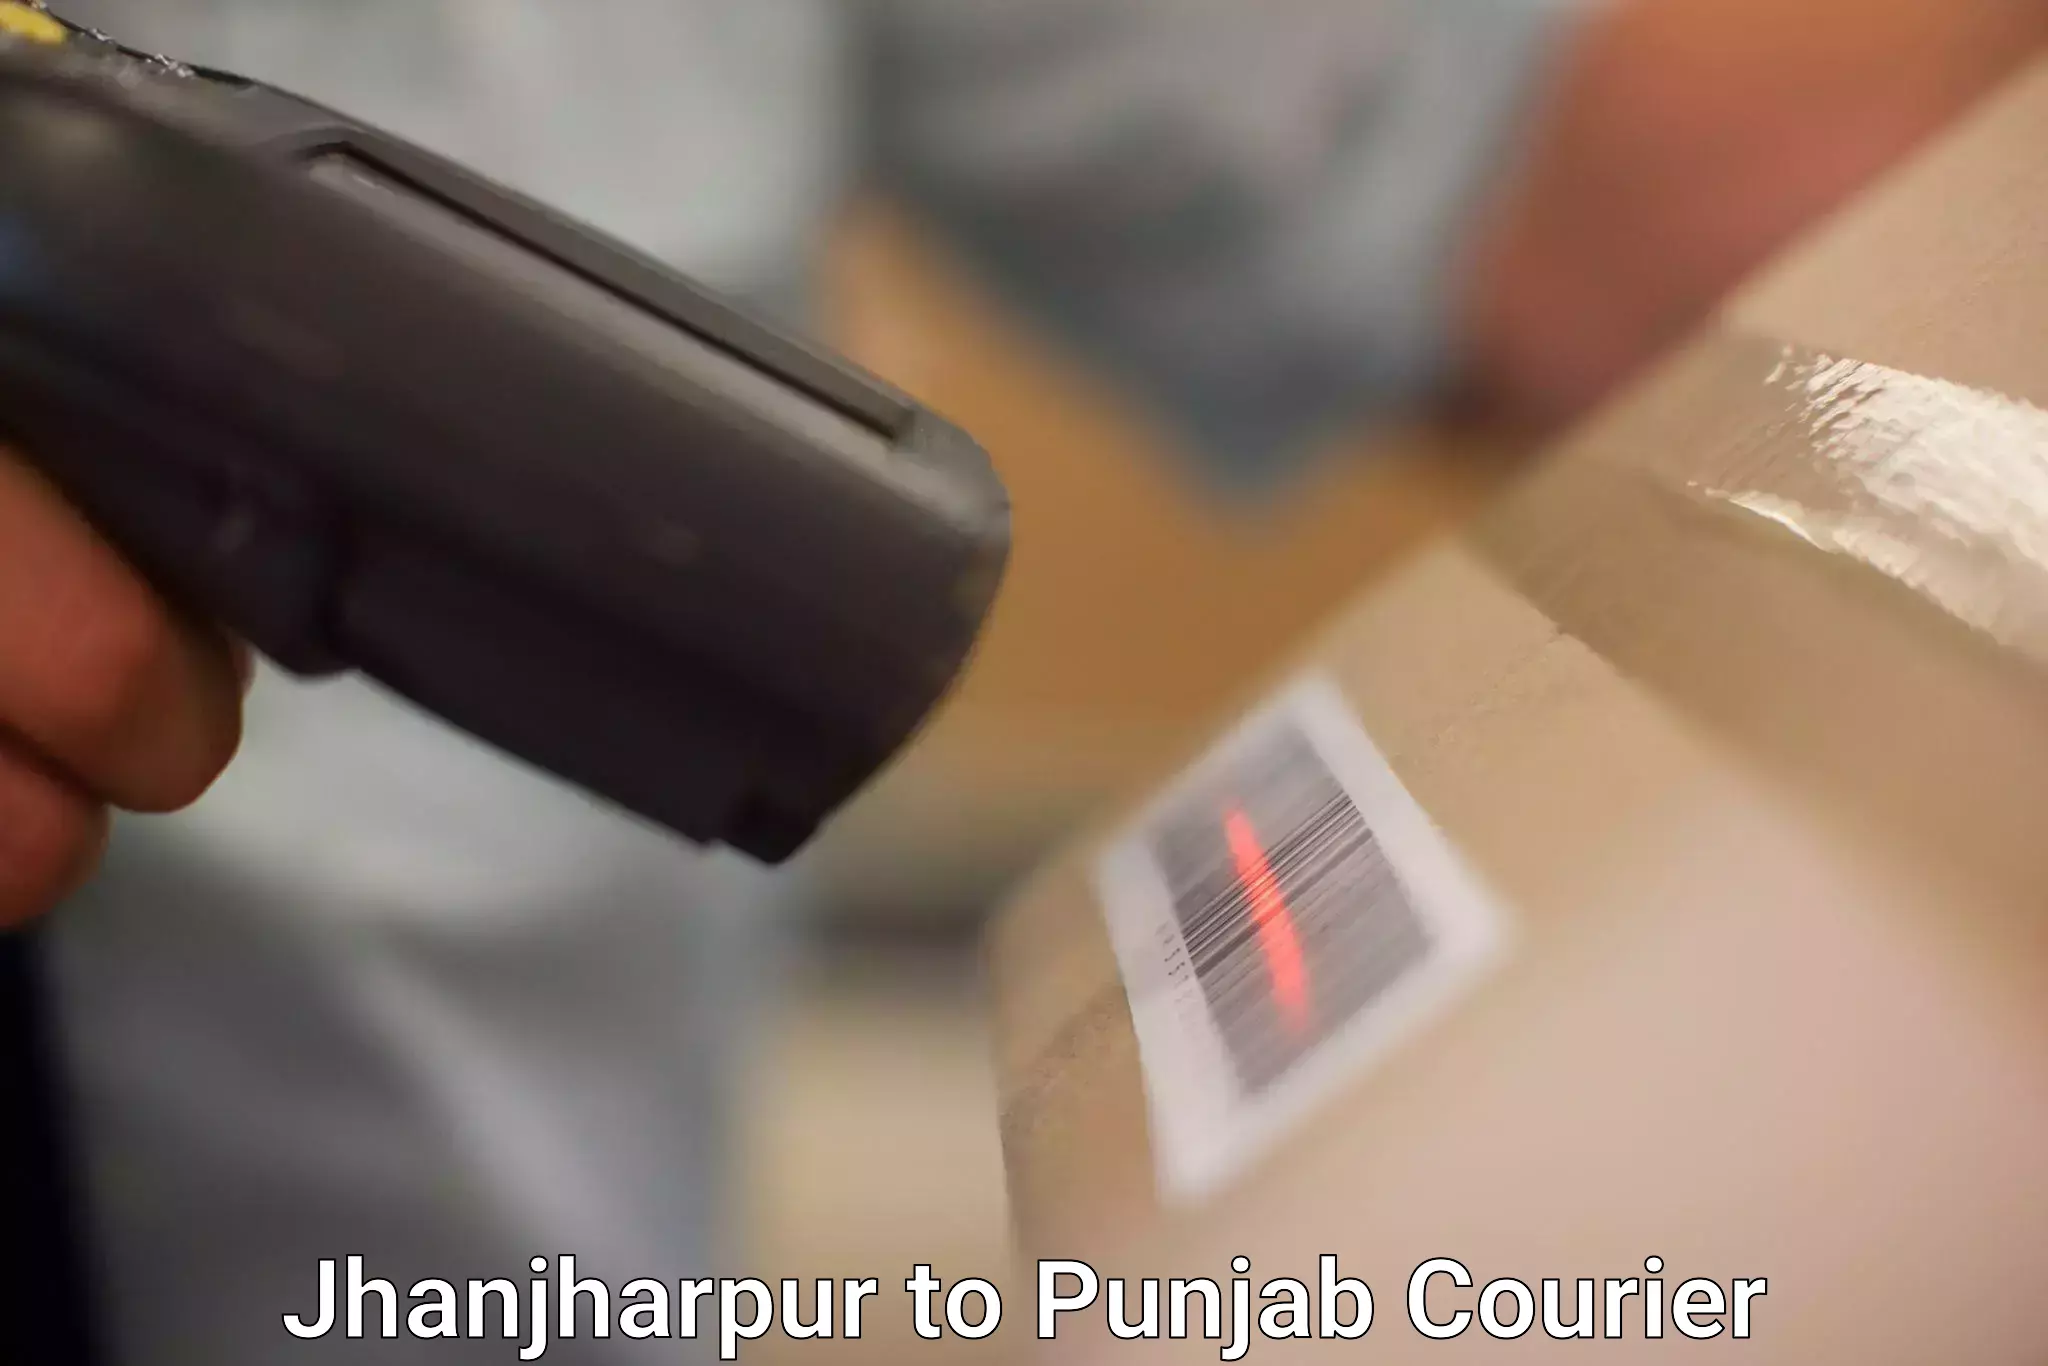 Secure packaging Jhanjharpur to Phillaur